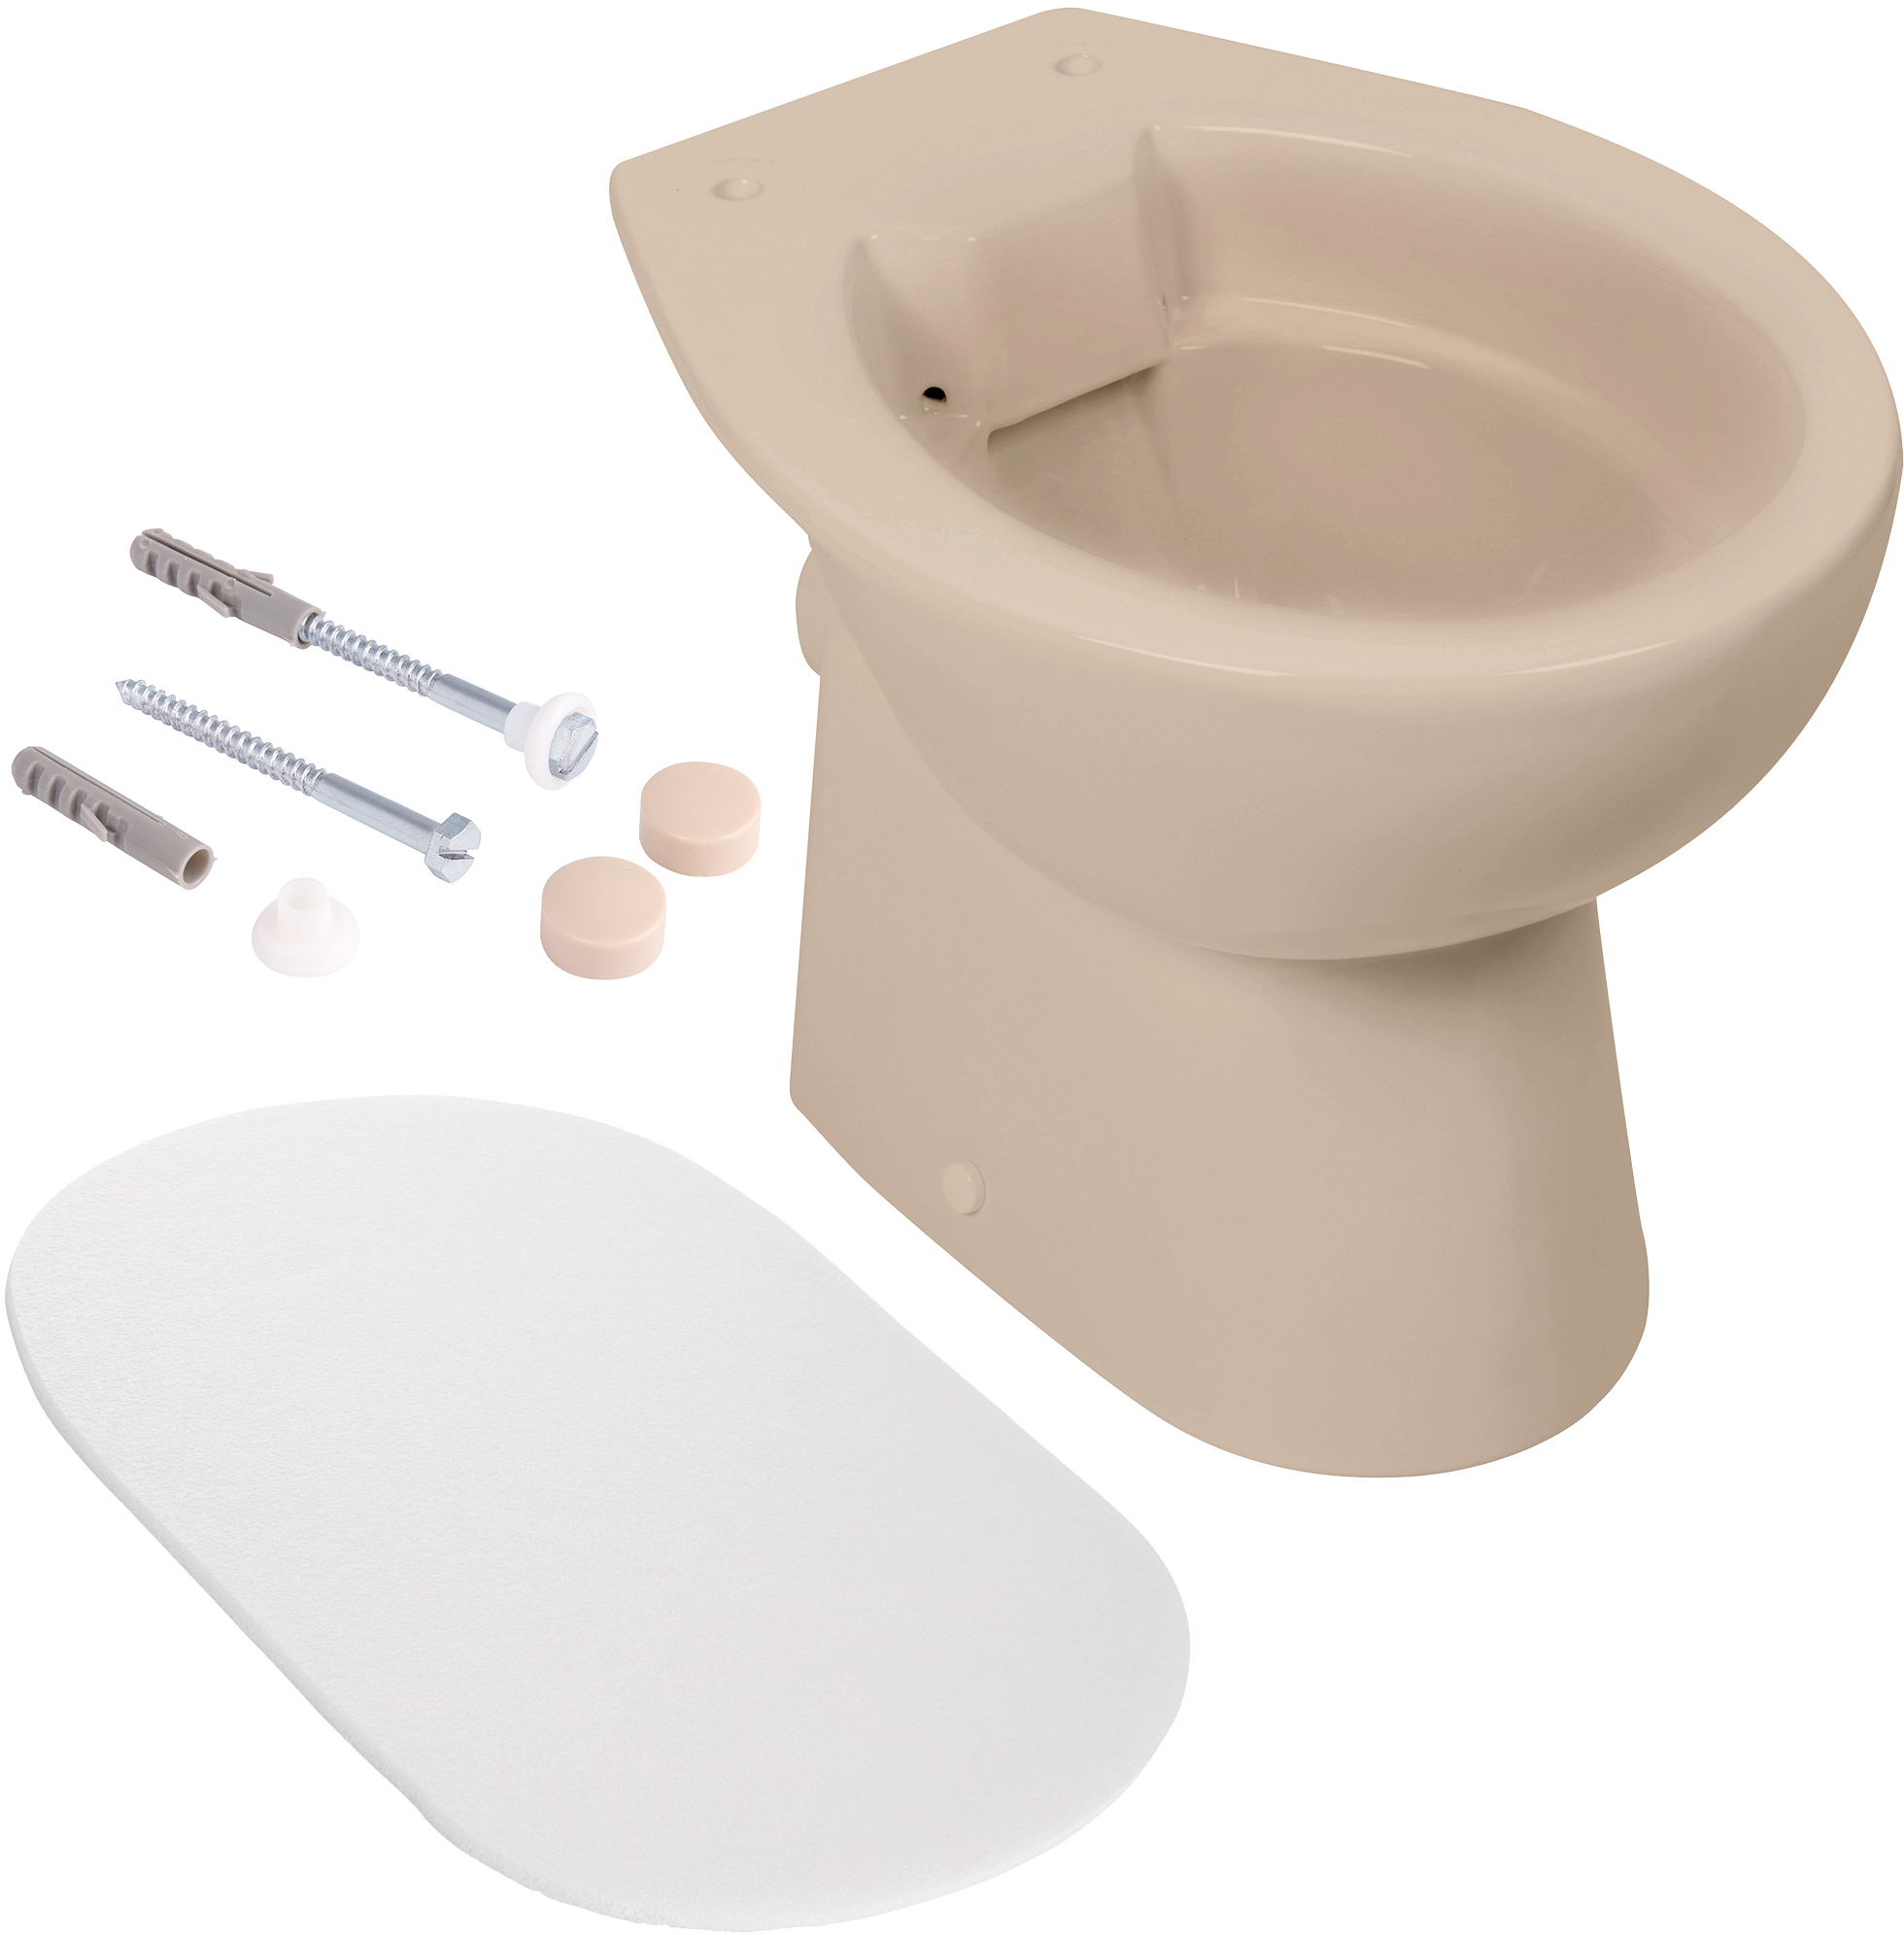 Spülrandloses Stand-WC in Beige mit Schallschutz und Befestigung, Komplett-Set